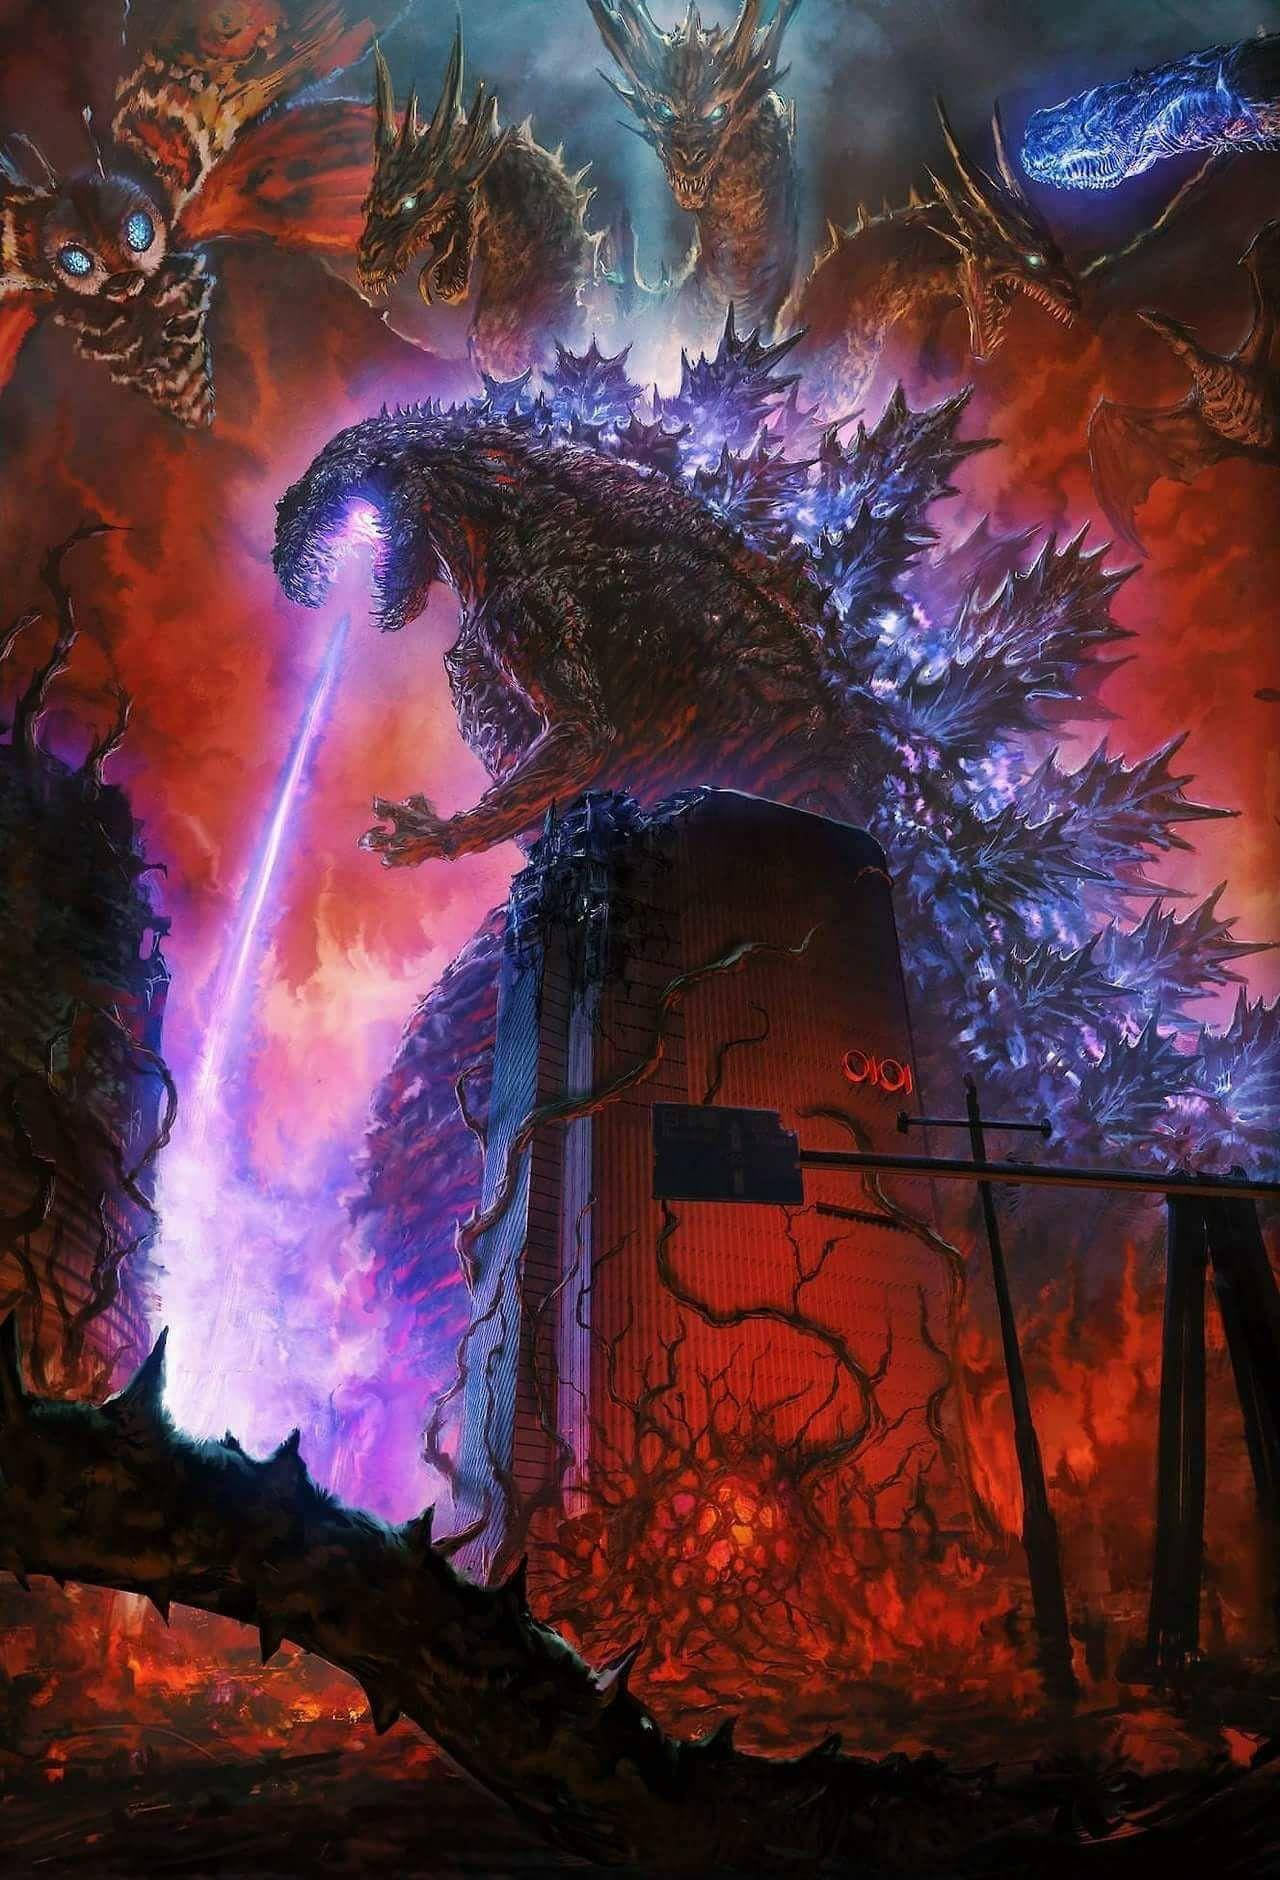 Derzerstörungsgott Shin Godzilla Entfacht Die Nacht. Wallpaper